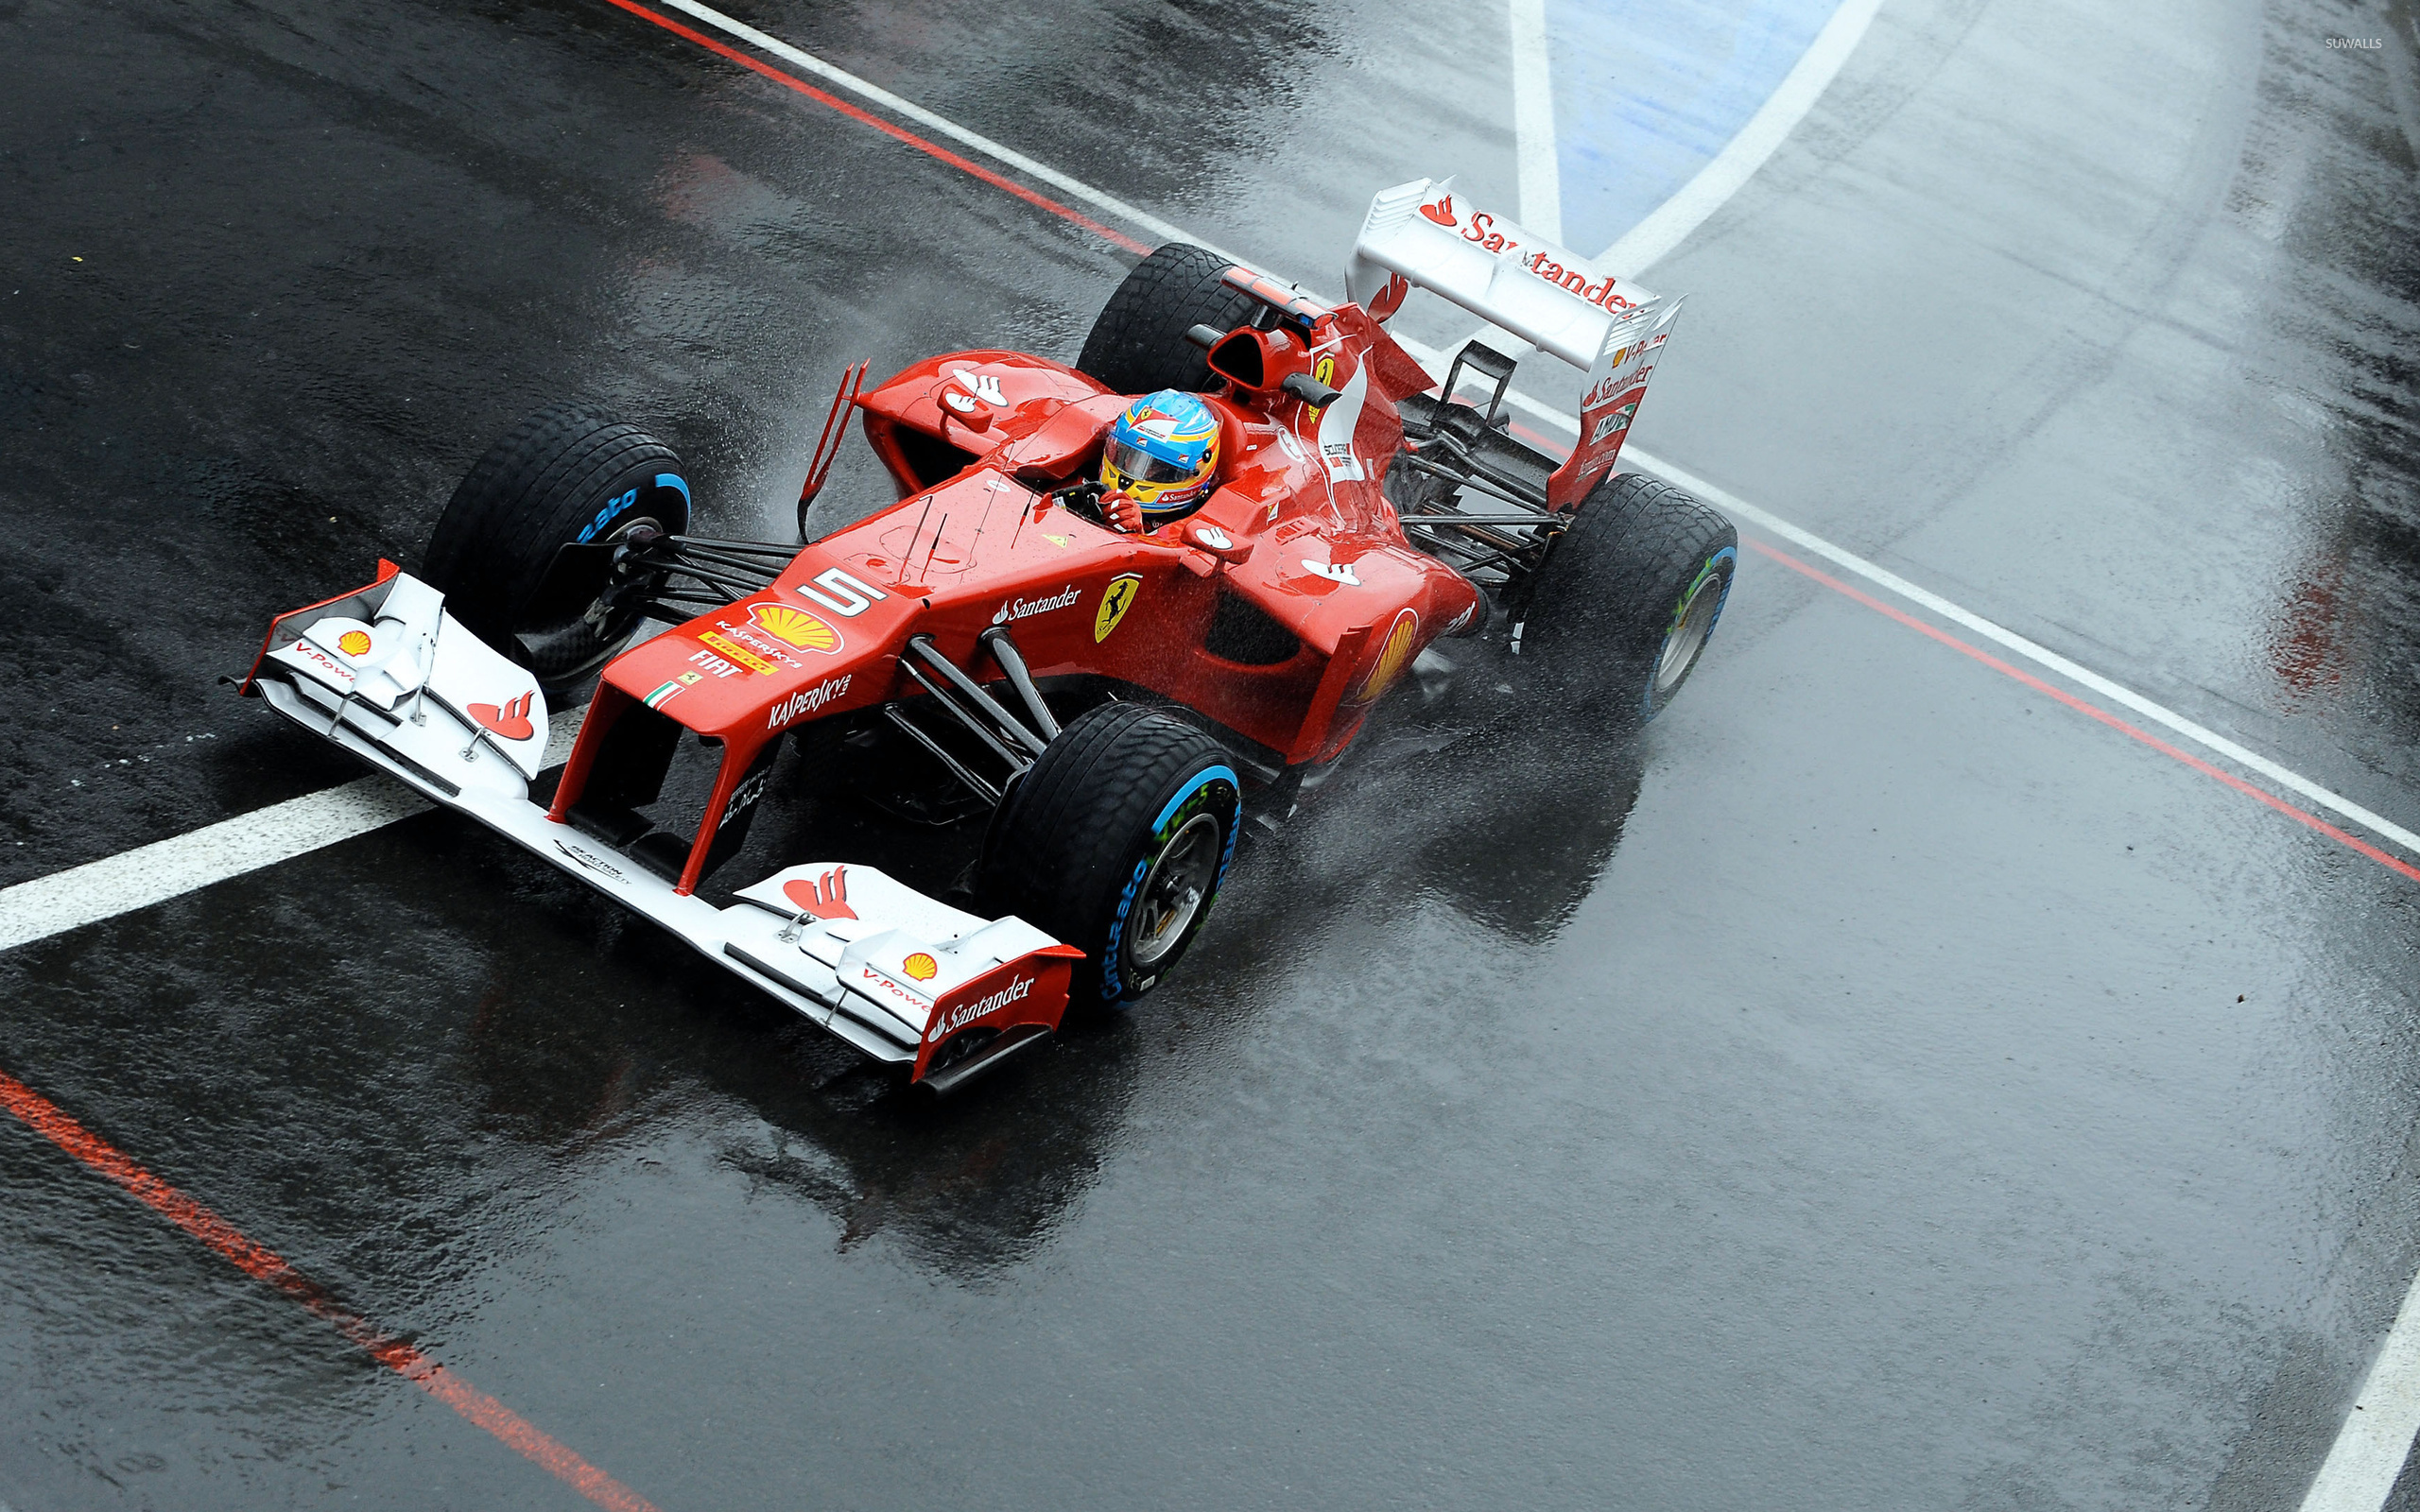 Fernando Alonso During A Race In Scuderia Ferrari Wallpaper